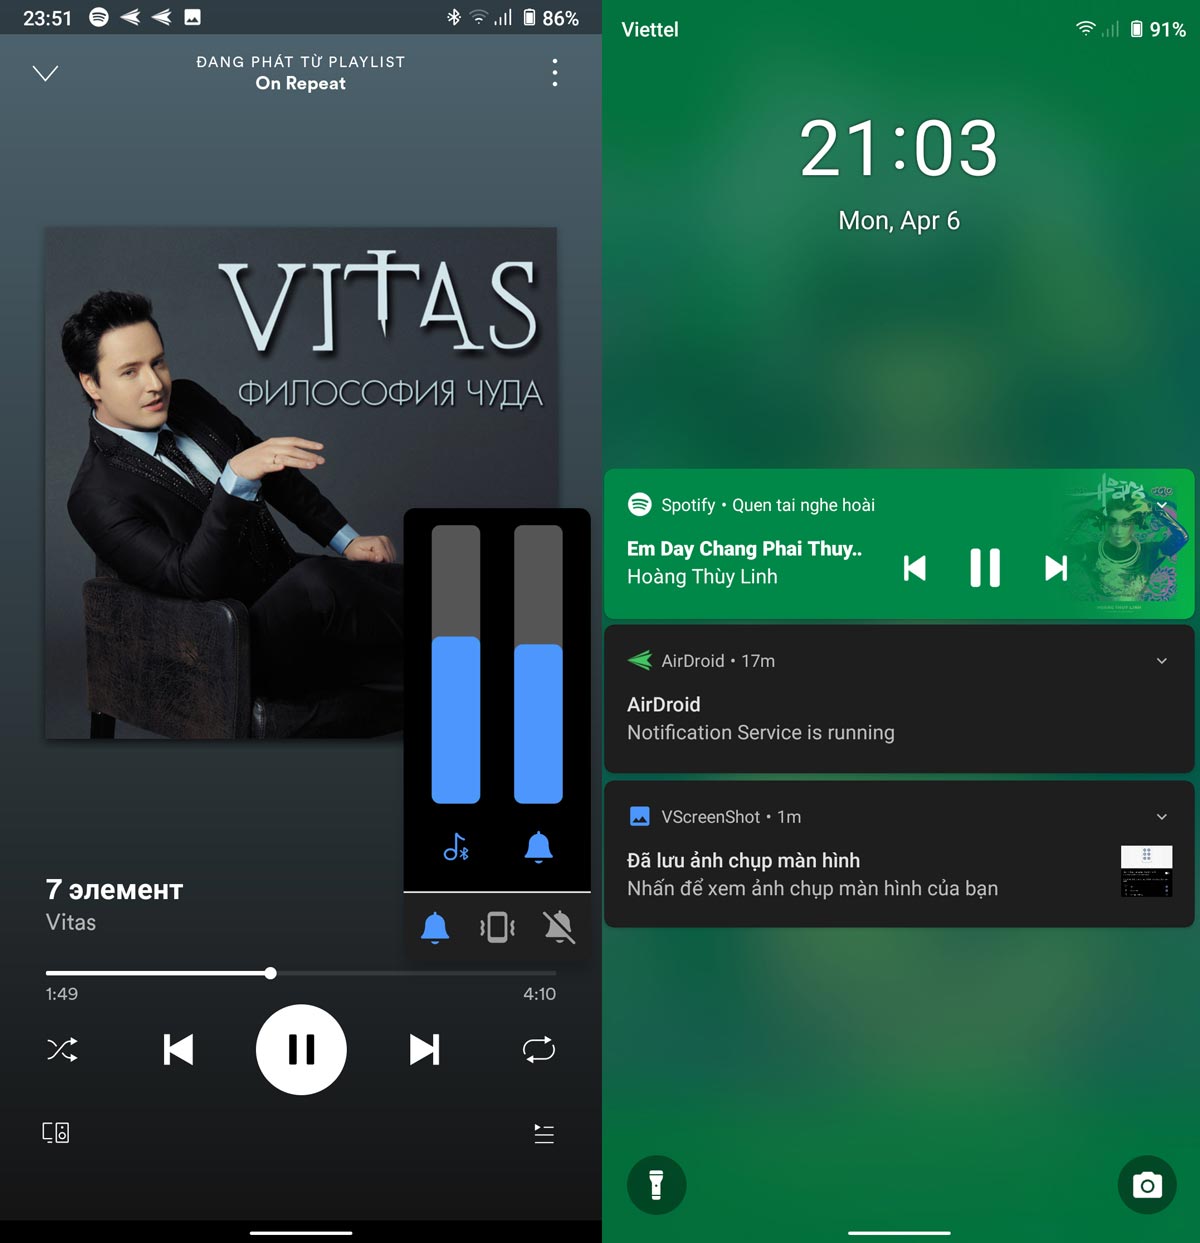 Cận cảnh VOS 3.0 vừa
được Vsmart tung ra: Giao diện lột xác, Android 10, nhiều
ứng dụng mới